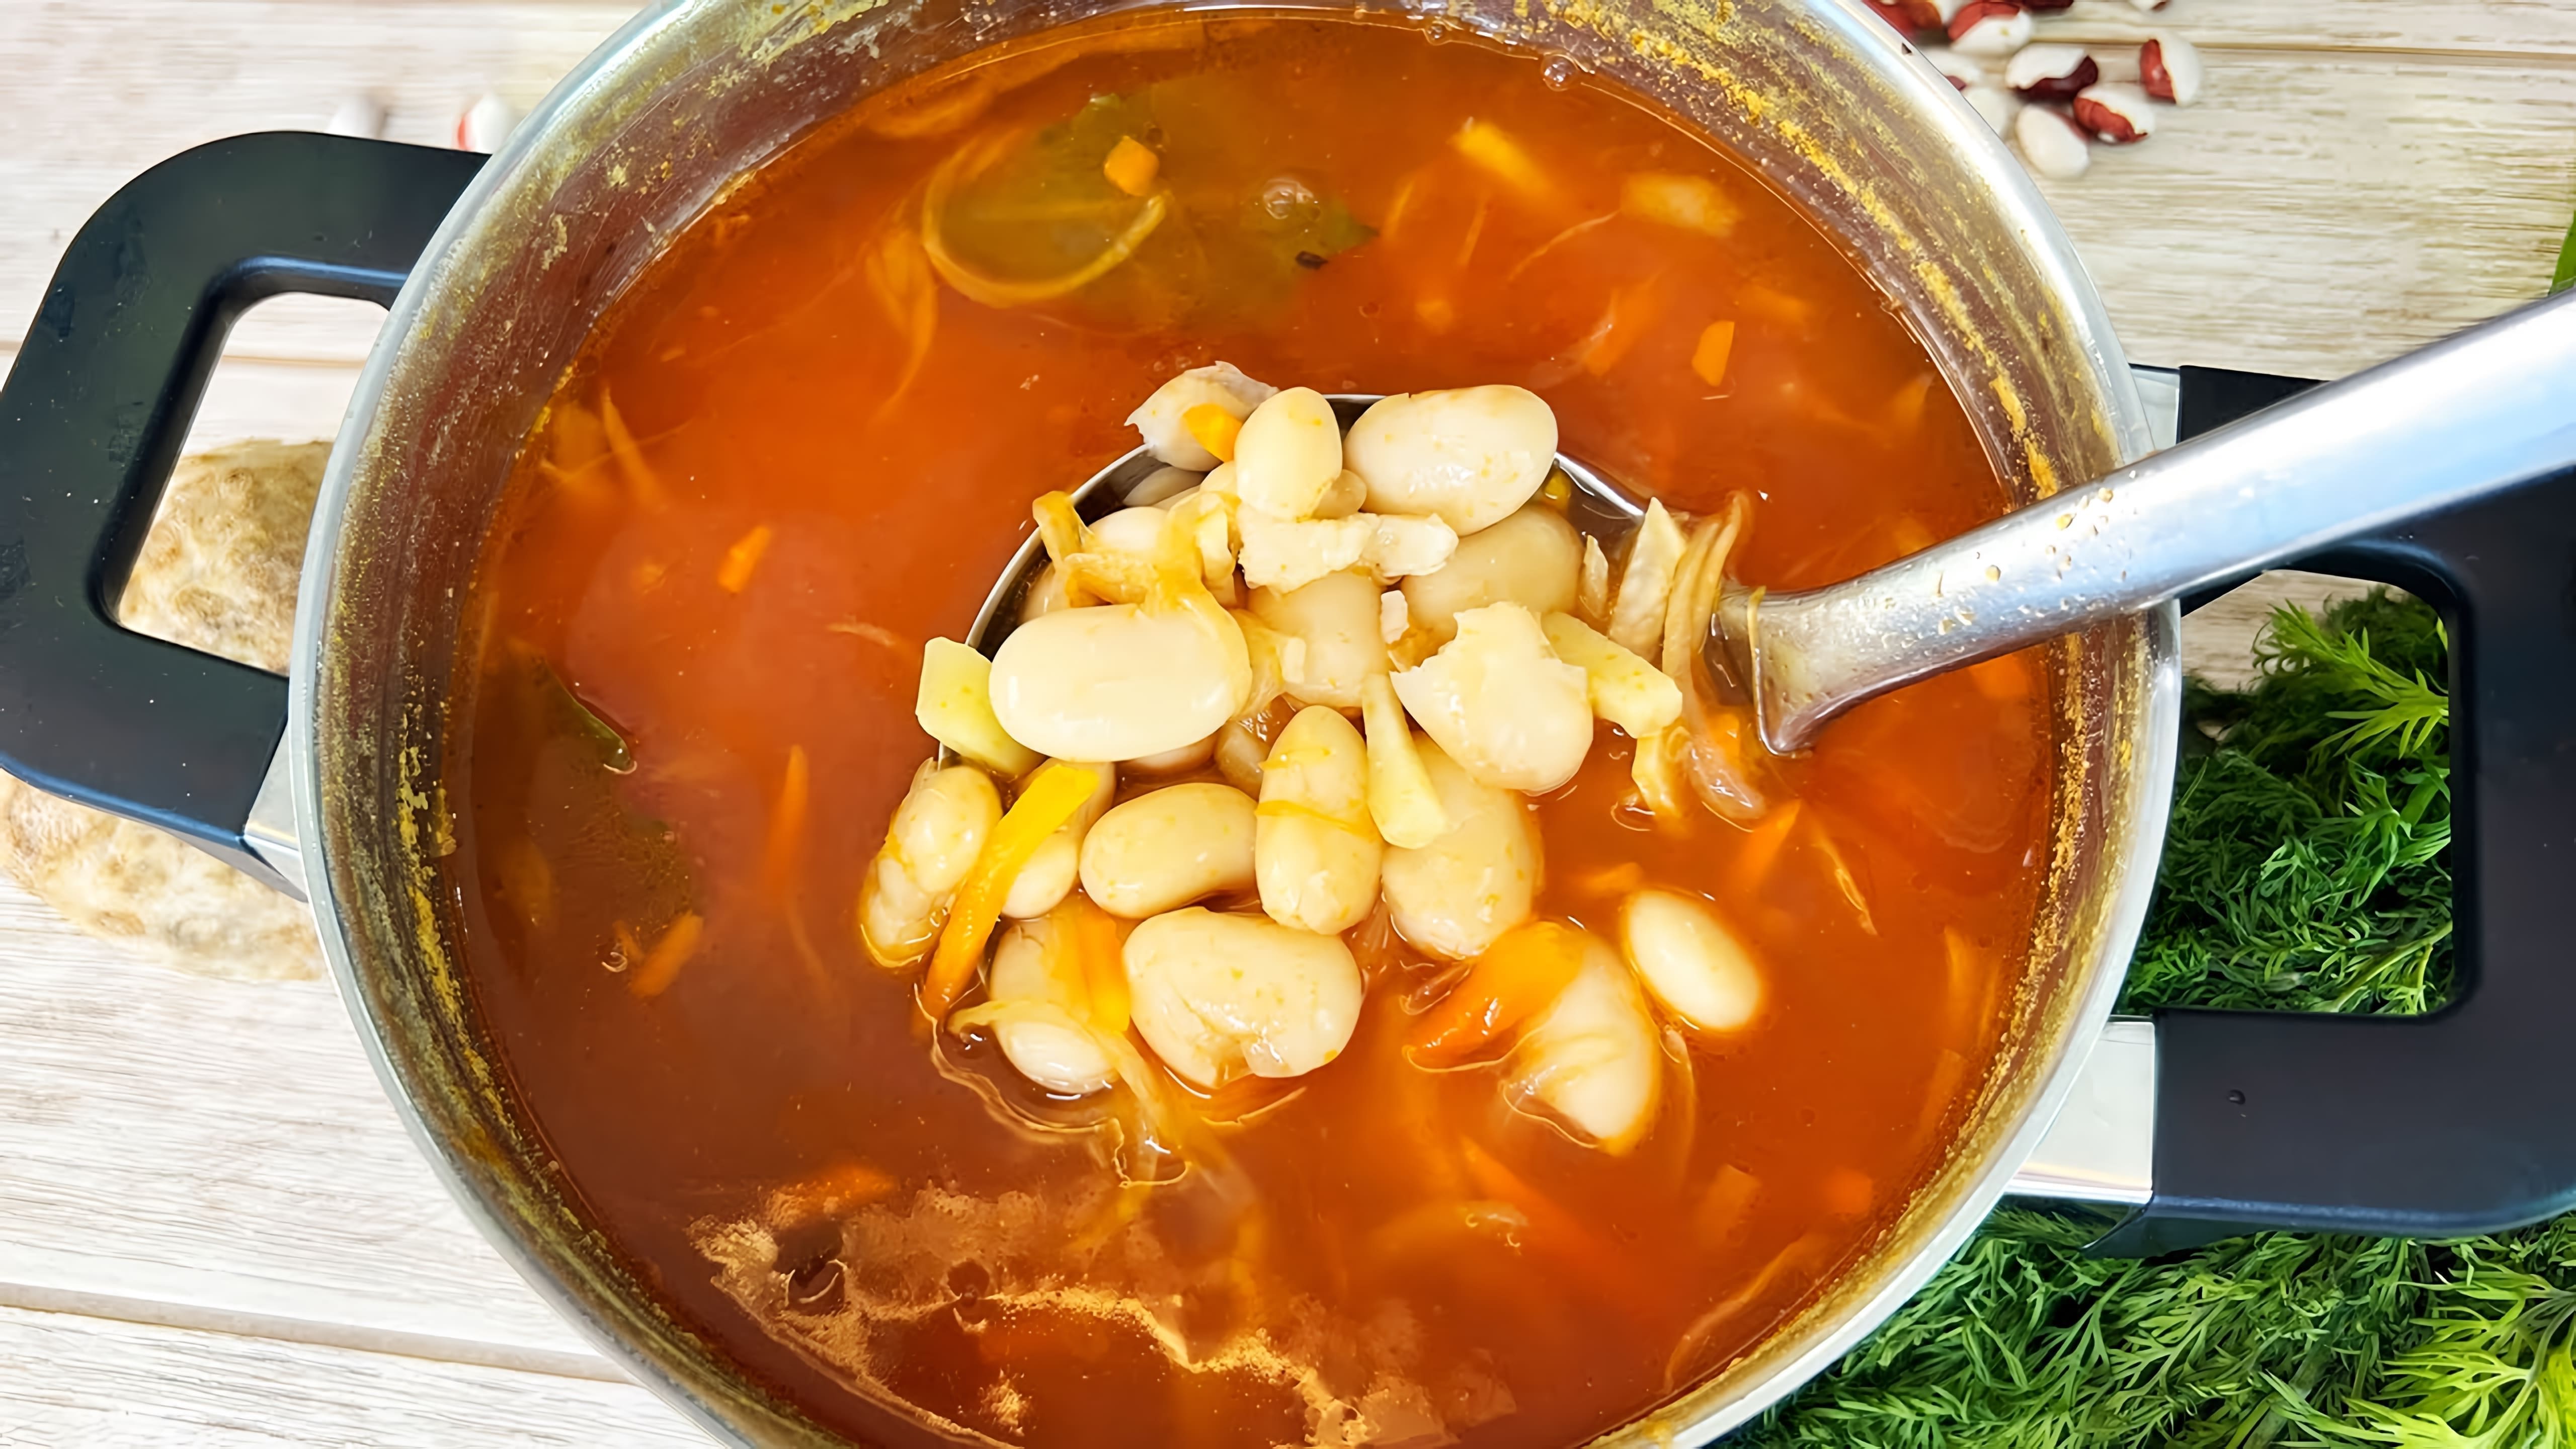 В этом видео демонстрируется процесс приготовления постного супа с фасолью